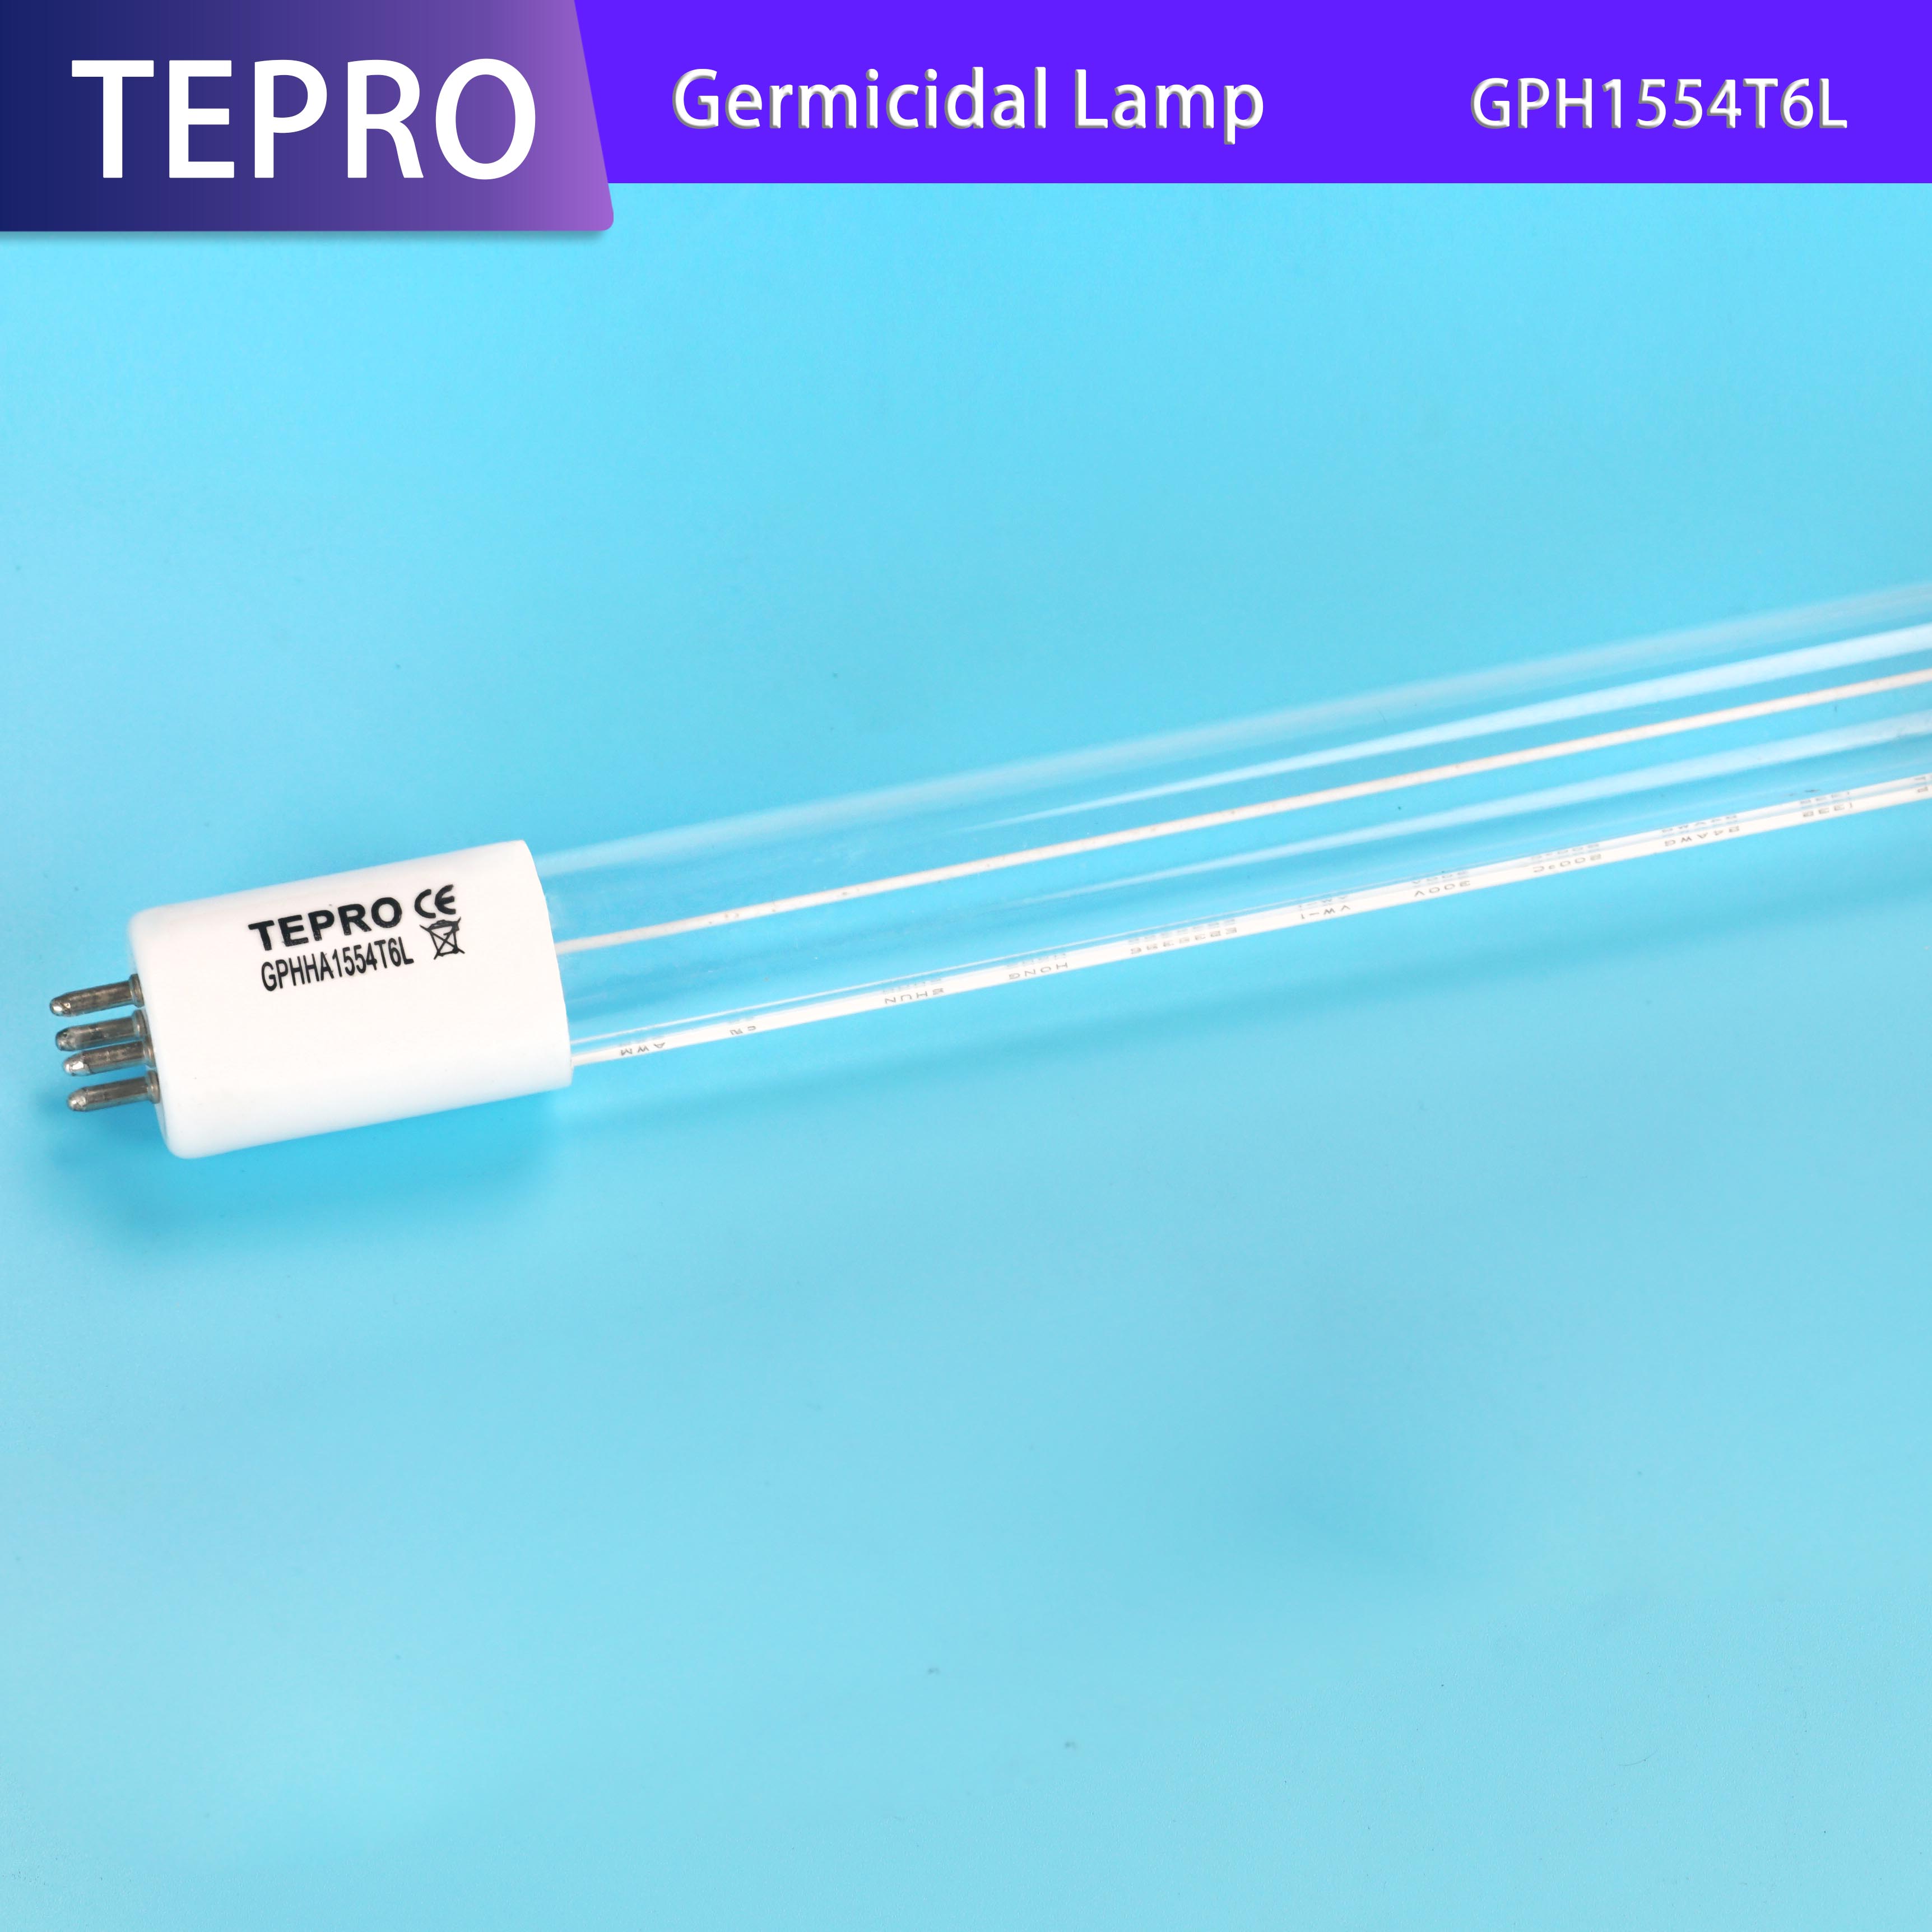 Tepro-uvc light | PRODUCTS | Tepro